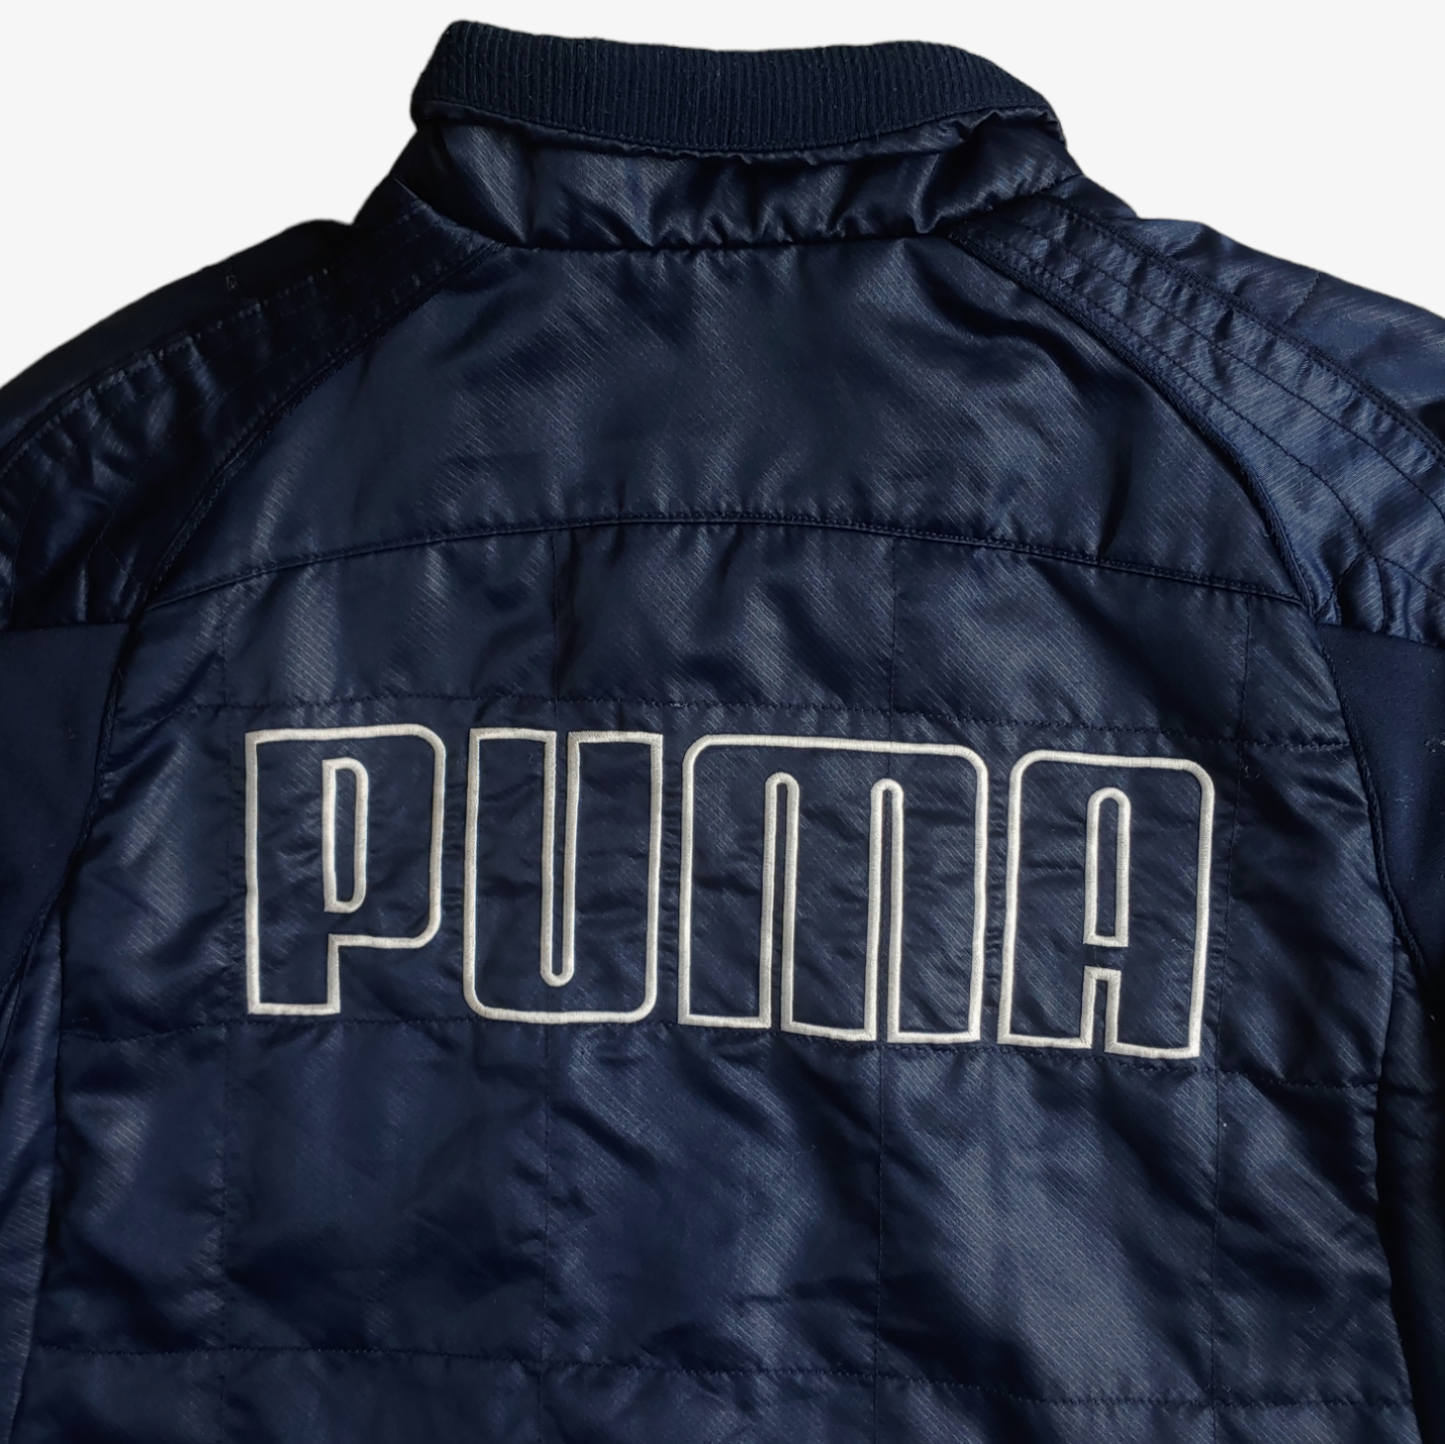 Vintage Y2K 2005 Puma x BMW Williams Formula One Racing Team Jacket Back Logo - Casspios Dream 